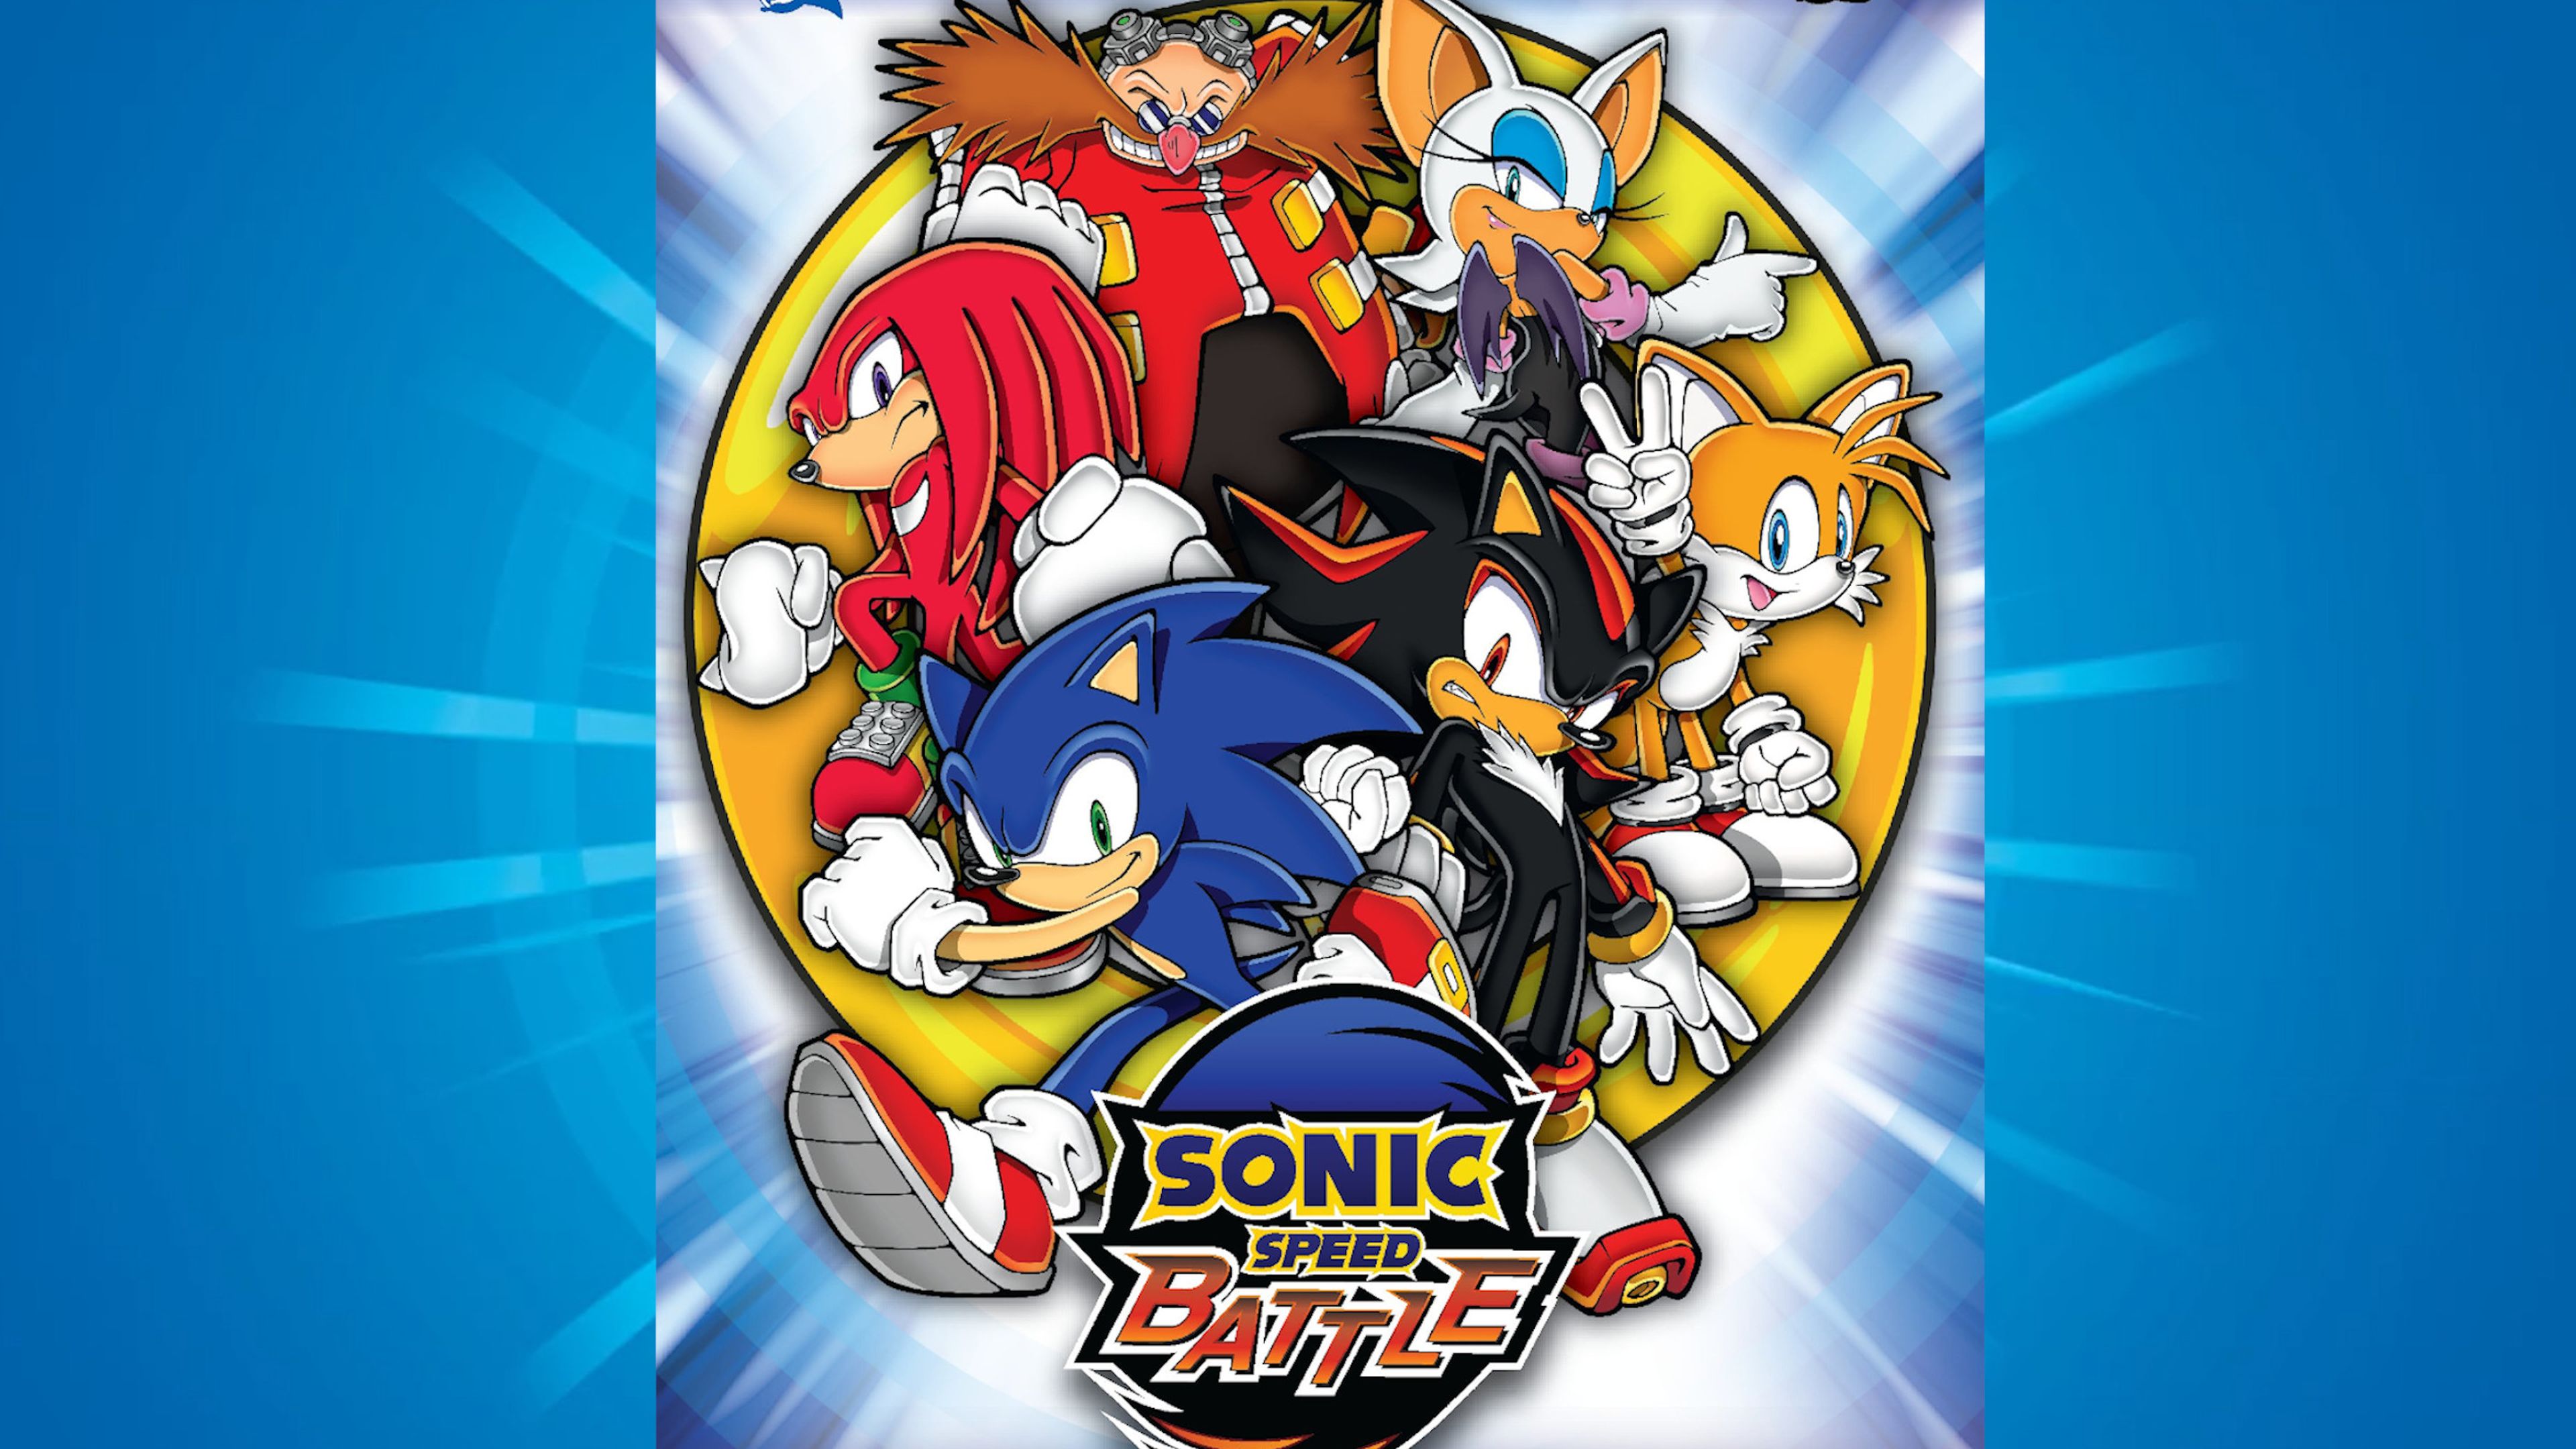 Sonic Speed Battle